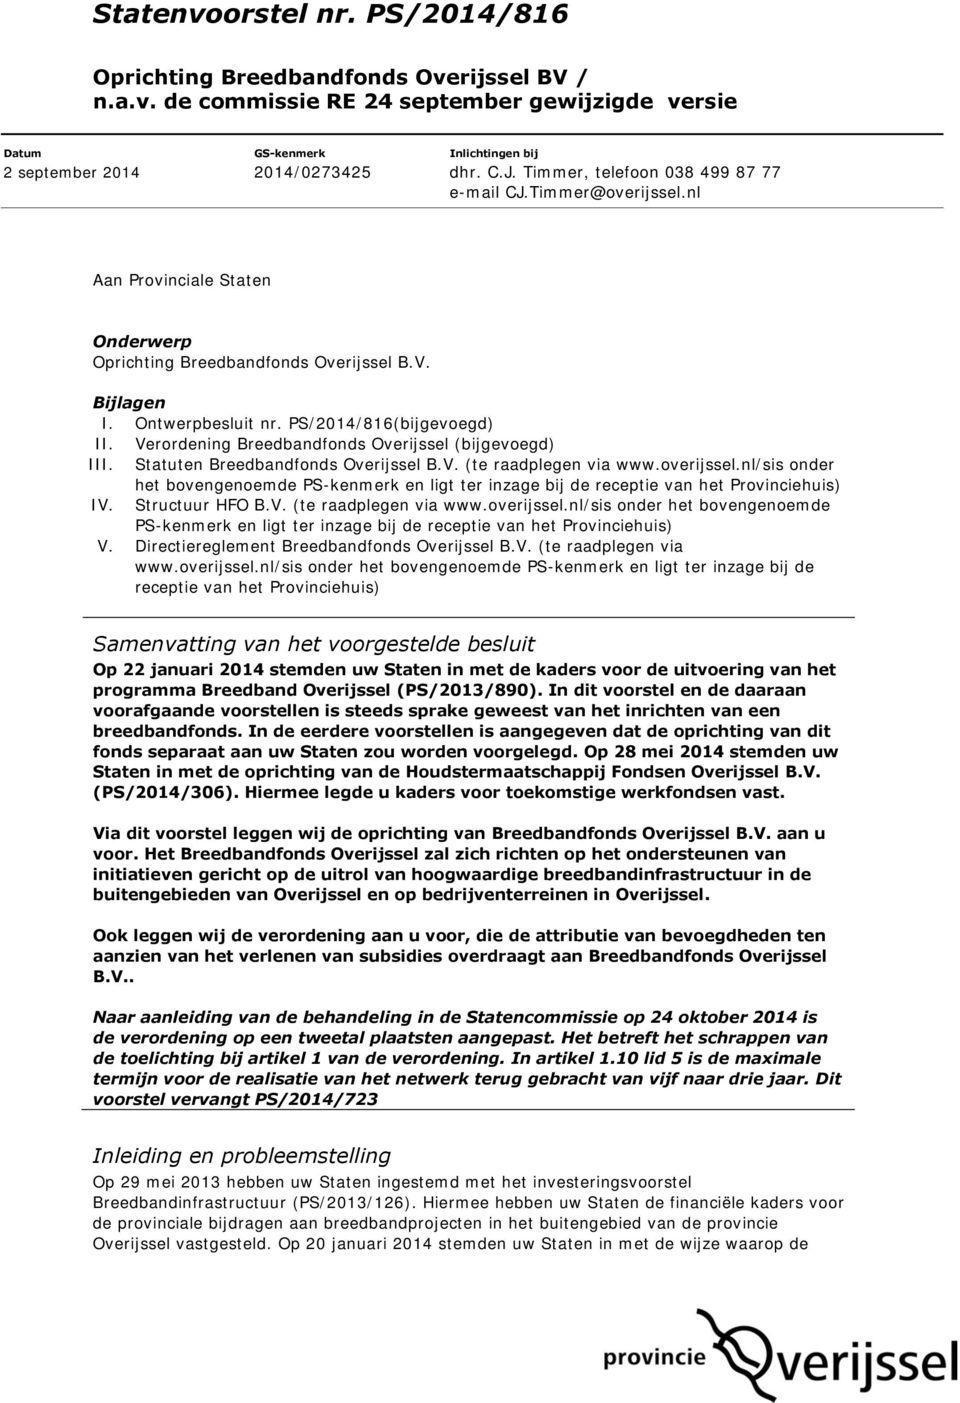 Verordening Breedbandfonds Overijssel (bijgevoegd) III. Statuten Breedbandfonds Overijssel B.V. (te raadplegen via www.overijssel.